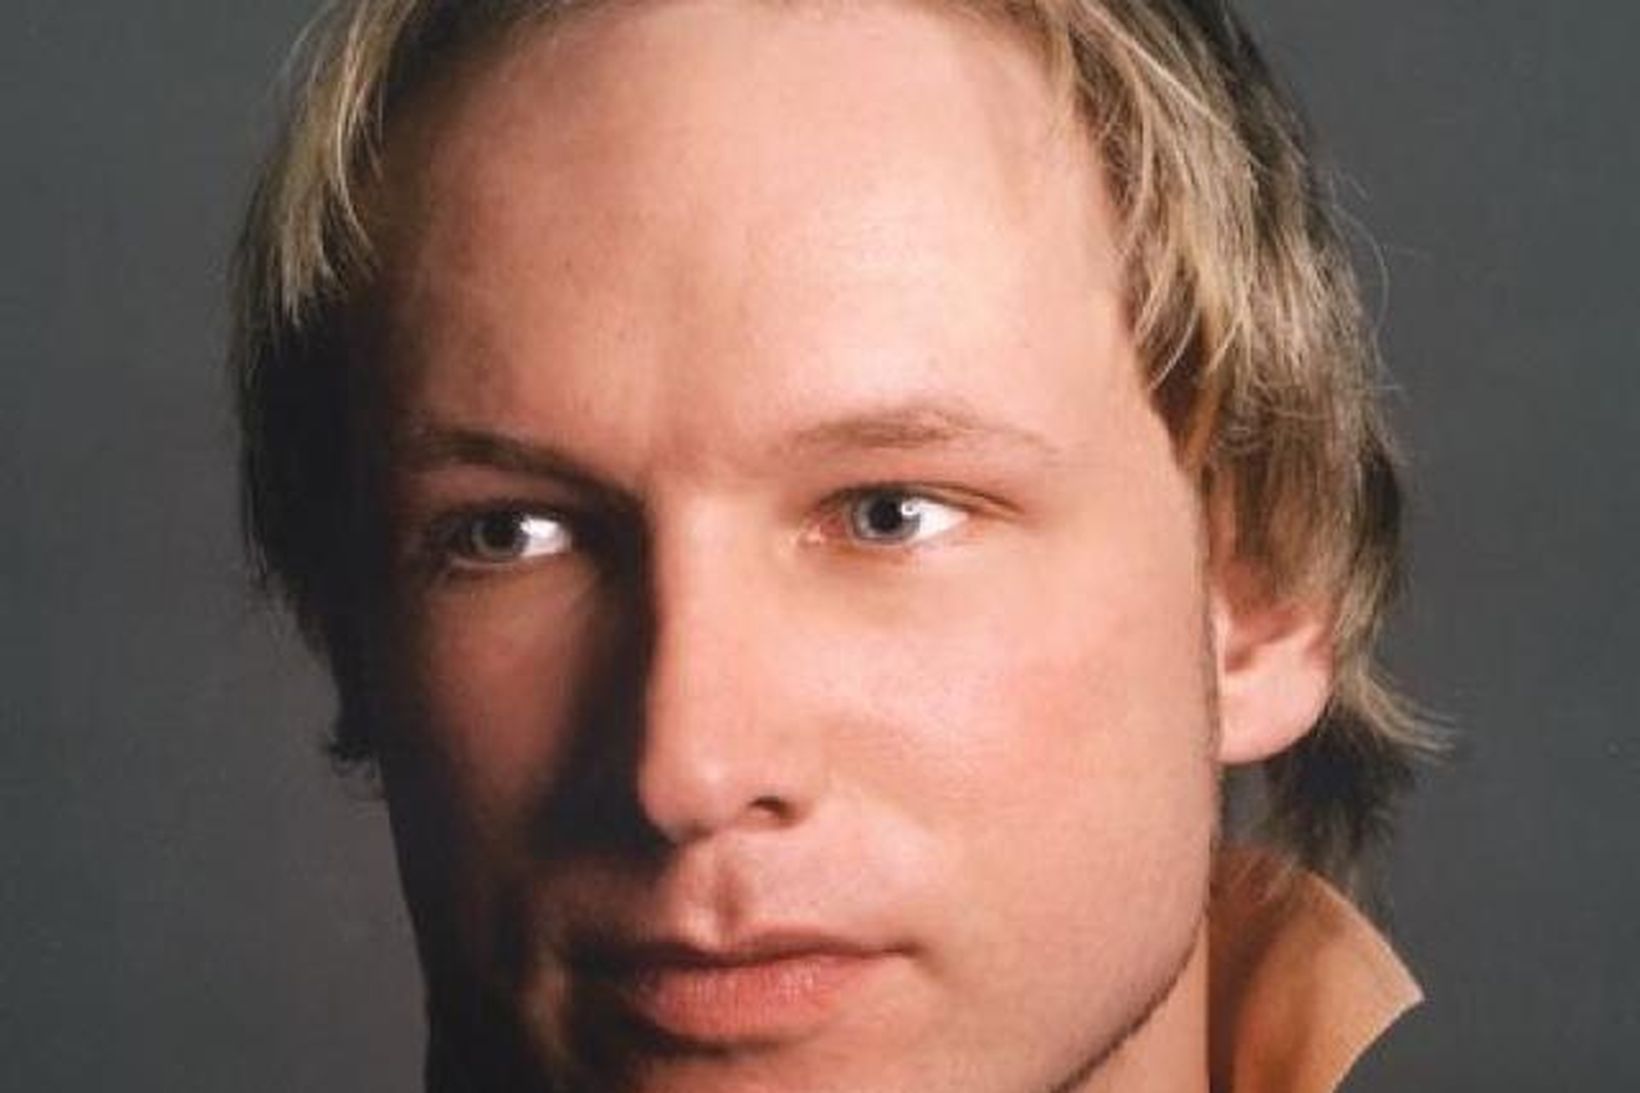 Anders Behring Breivik hefur viðurkennt að bera ábyrgð á hryðjuverkunum.